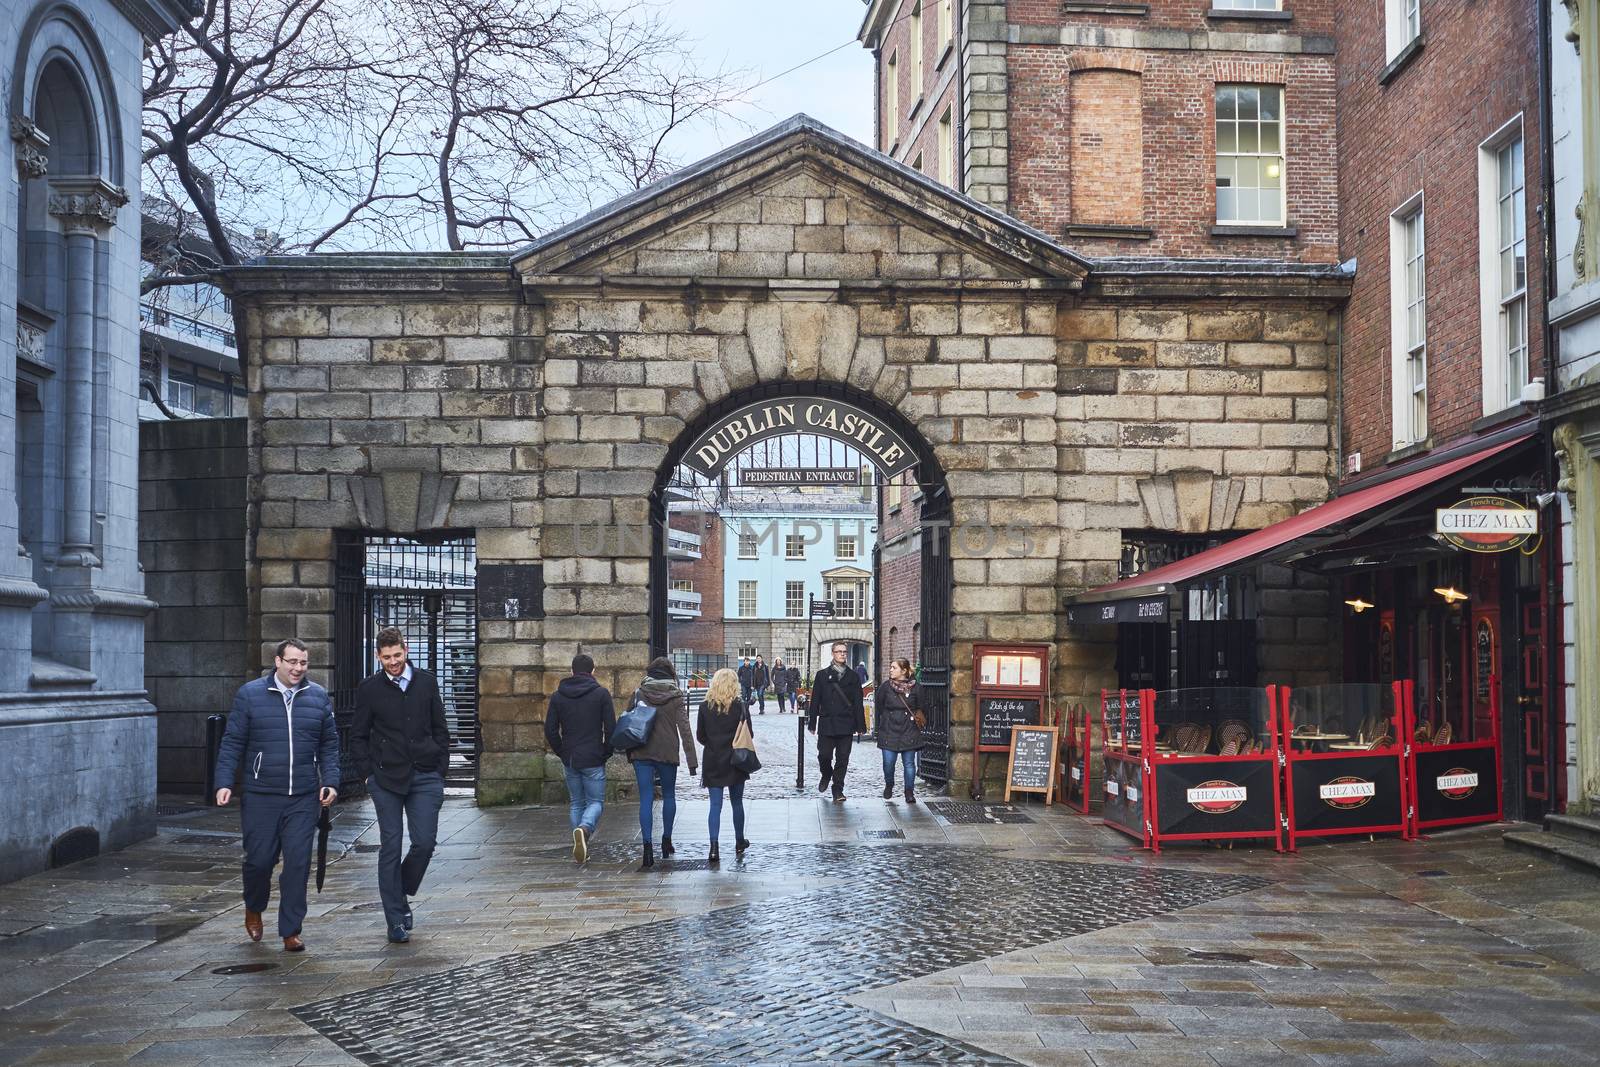 DUBLIN, IRELAND - JANUARY 05: Pedestrians walking in front of Dublin Castle gates. January 05, 2016 in Dublin